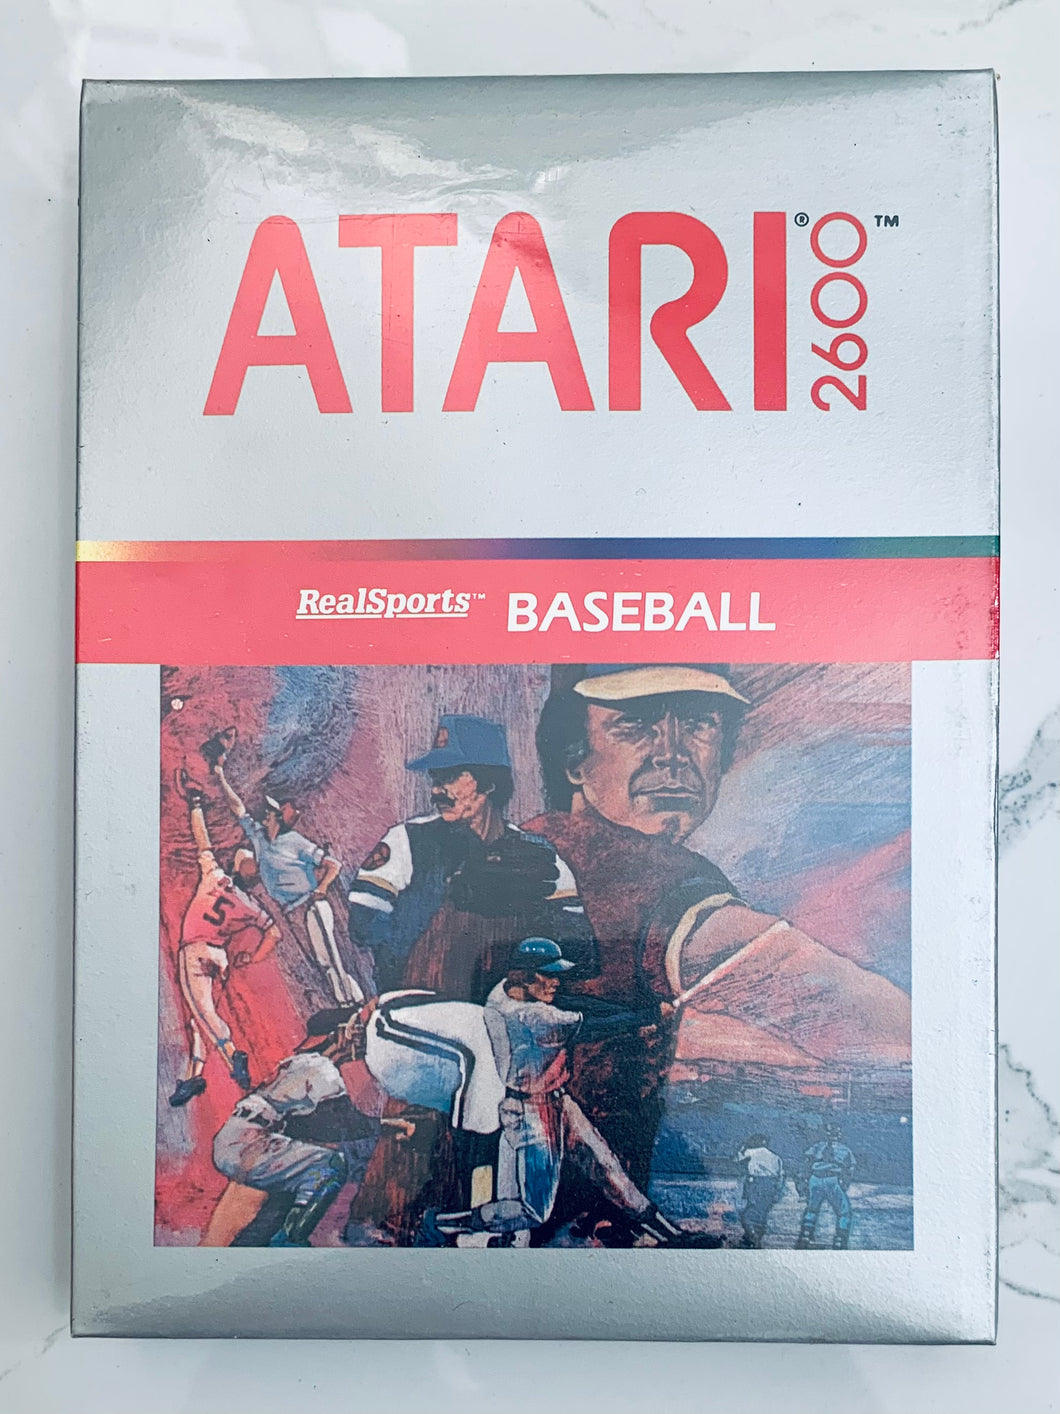 RealSports Baseball - Atari VCS 2600 - NTSC - Brand New